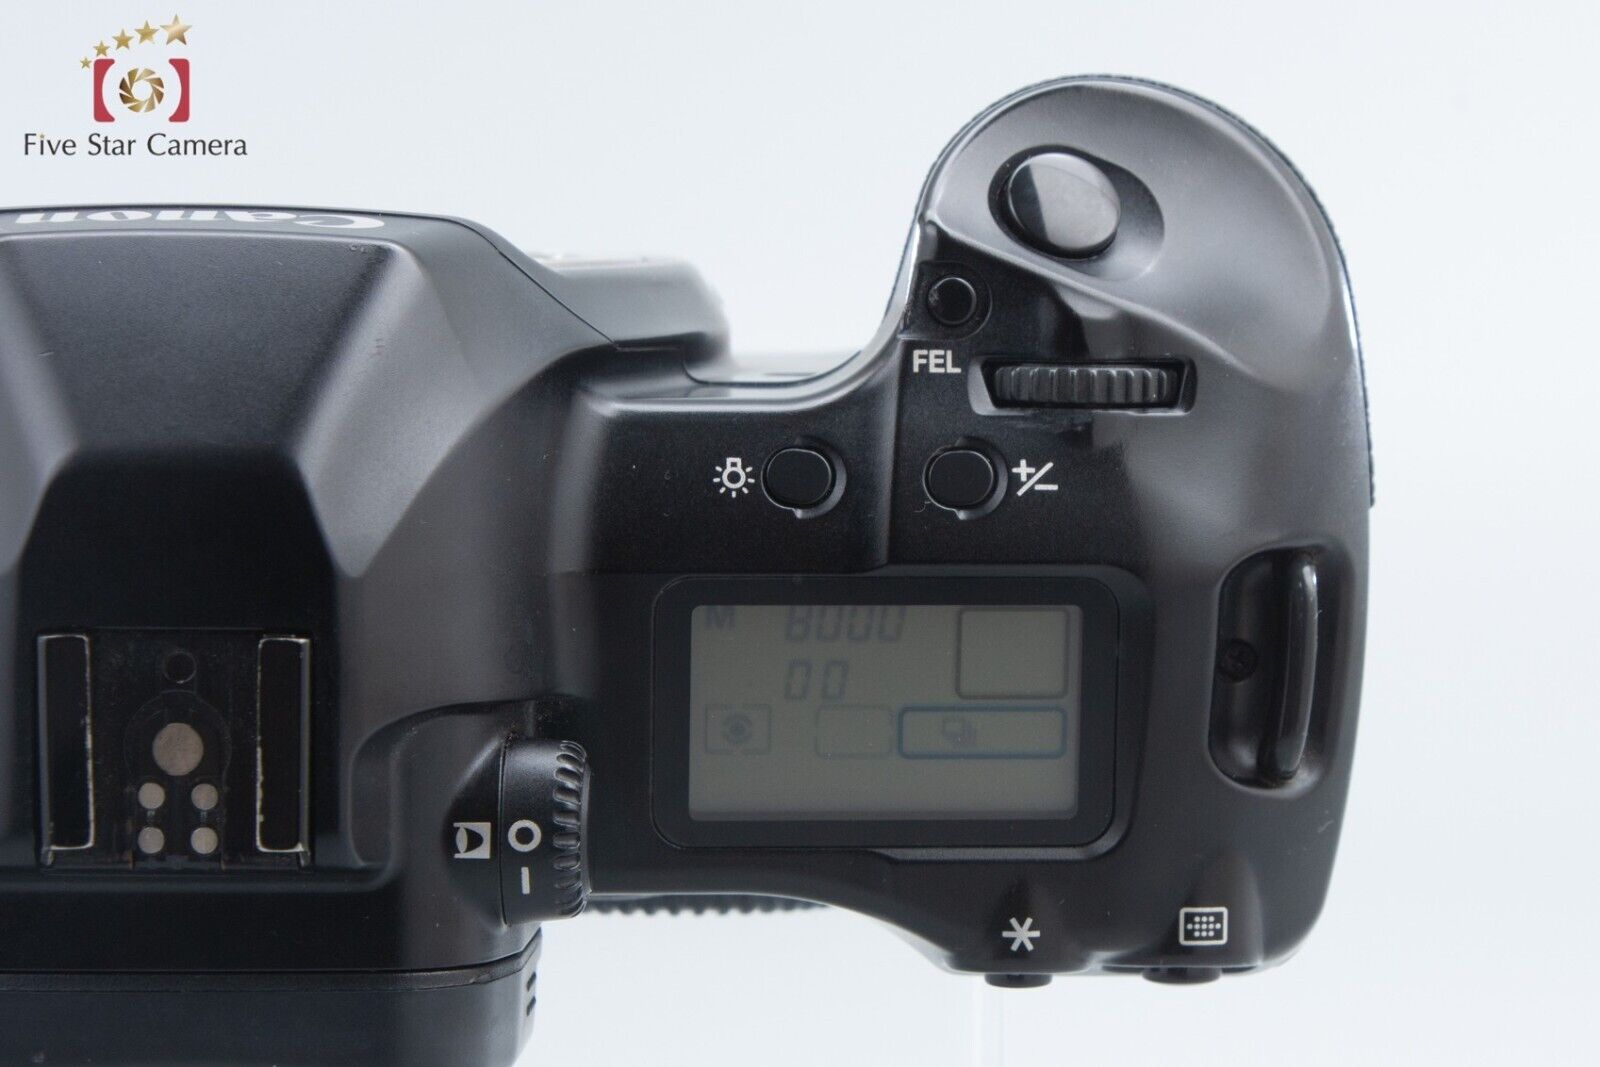 Canon EOS 3 35mm SLR Film Camera Body